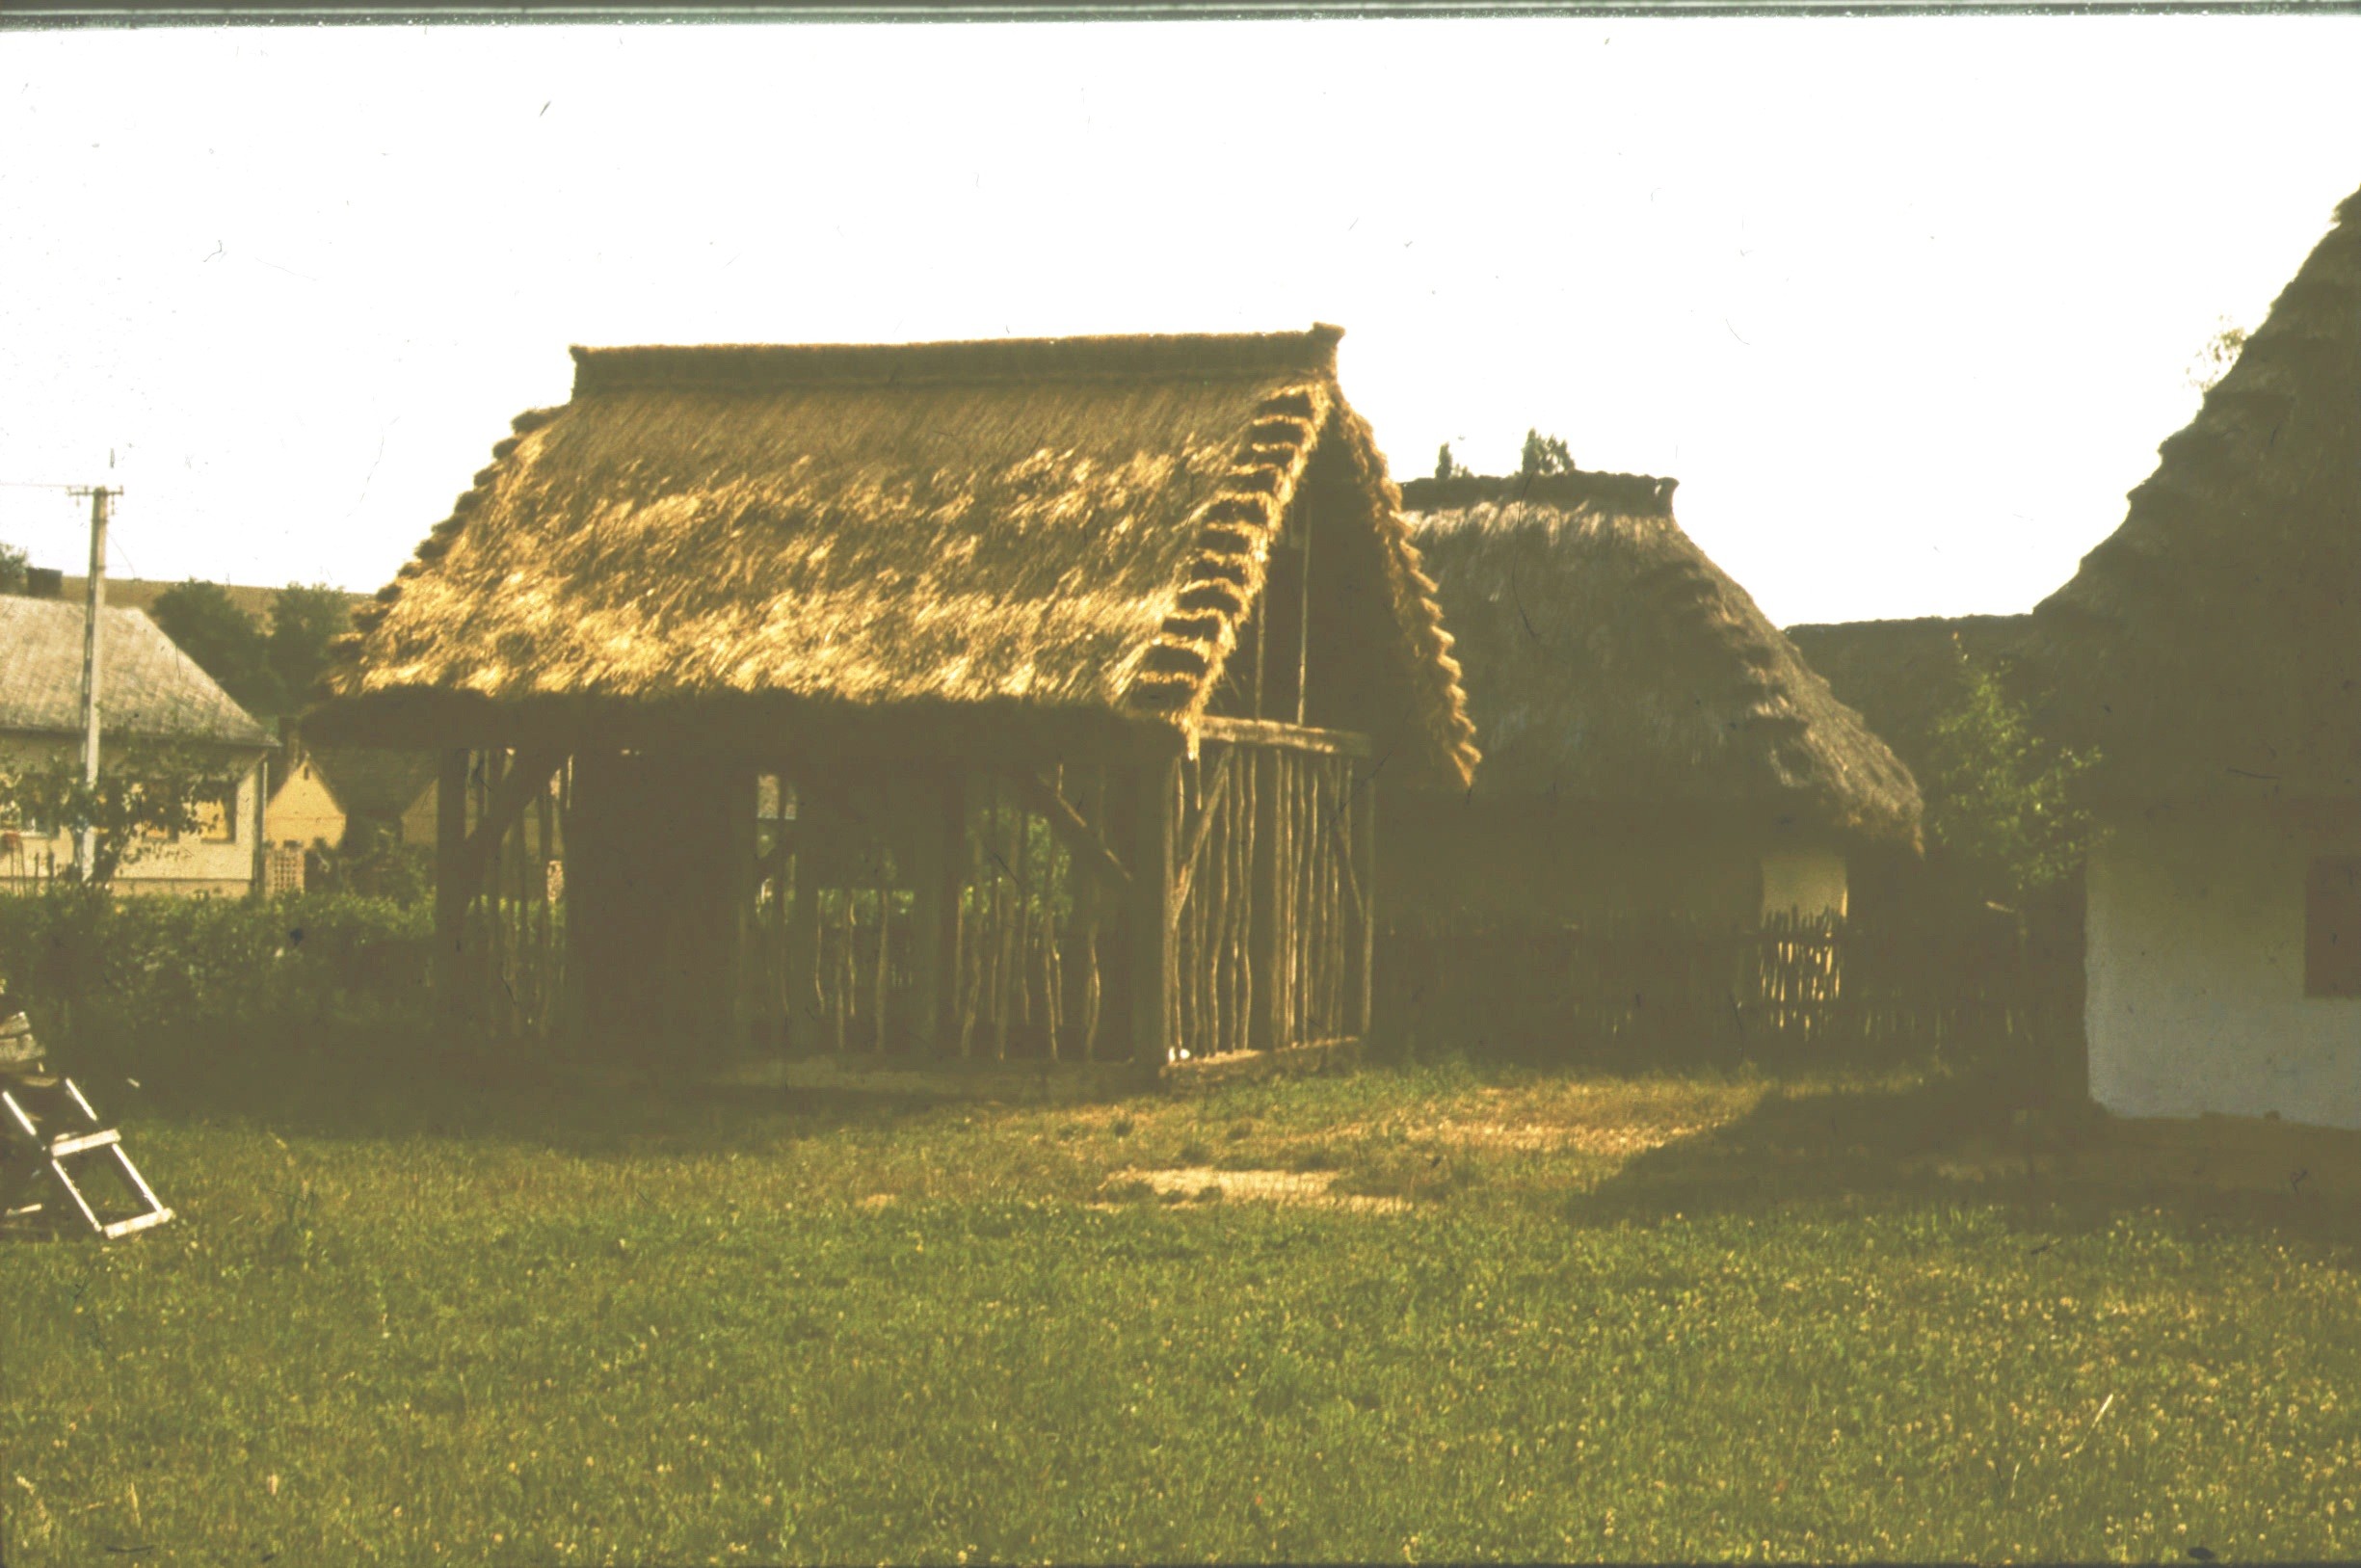 A bodvicai istálló DK-i nézete (Rippl-Rónai Múzeum RR-F)